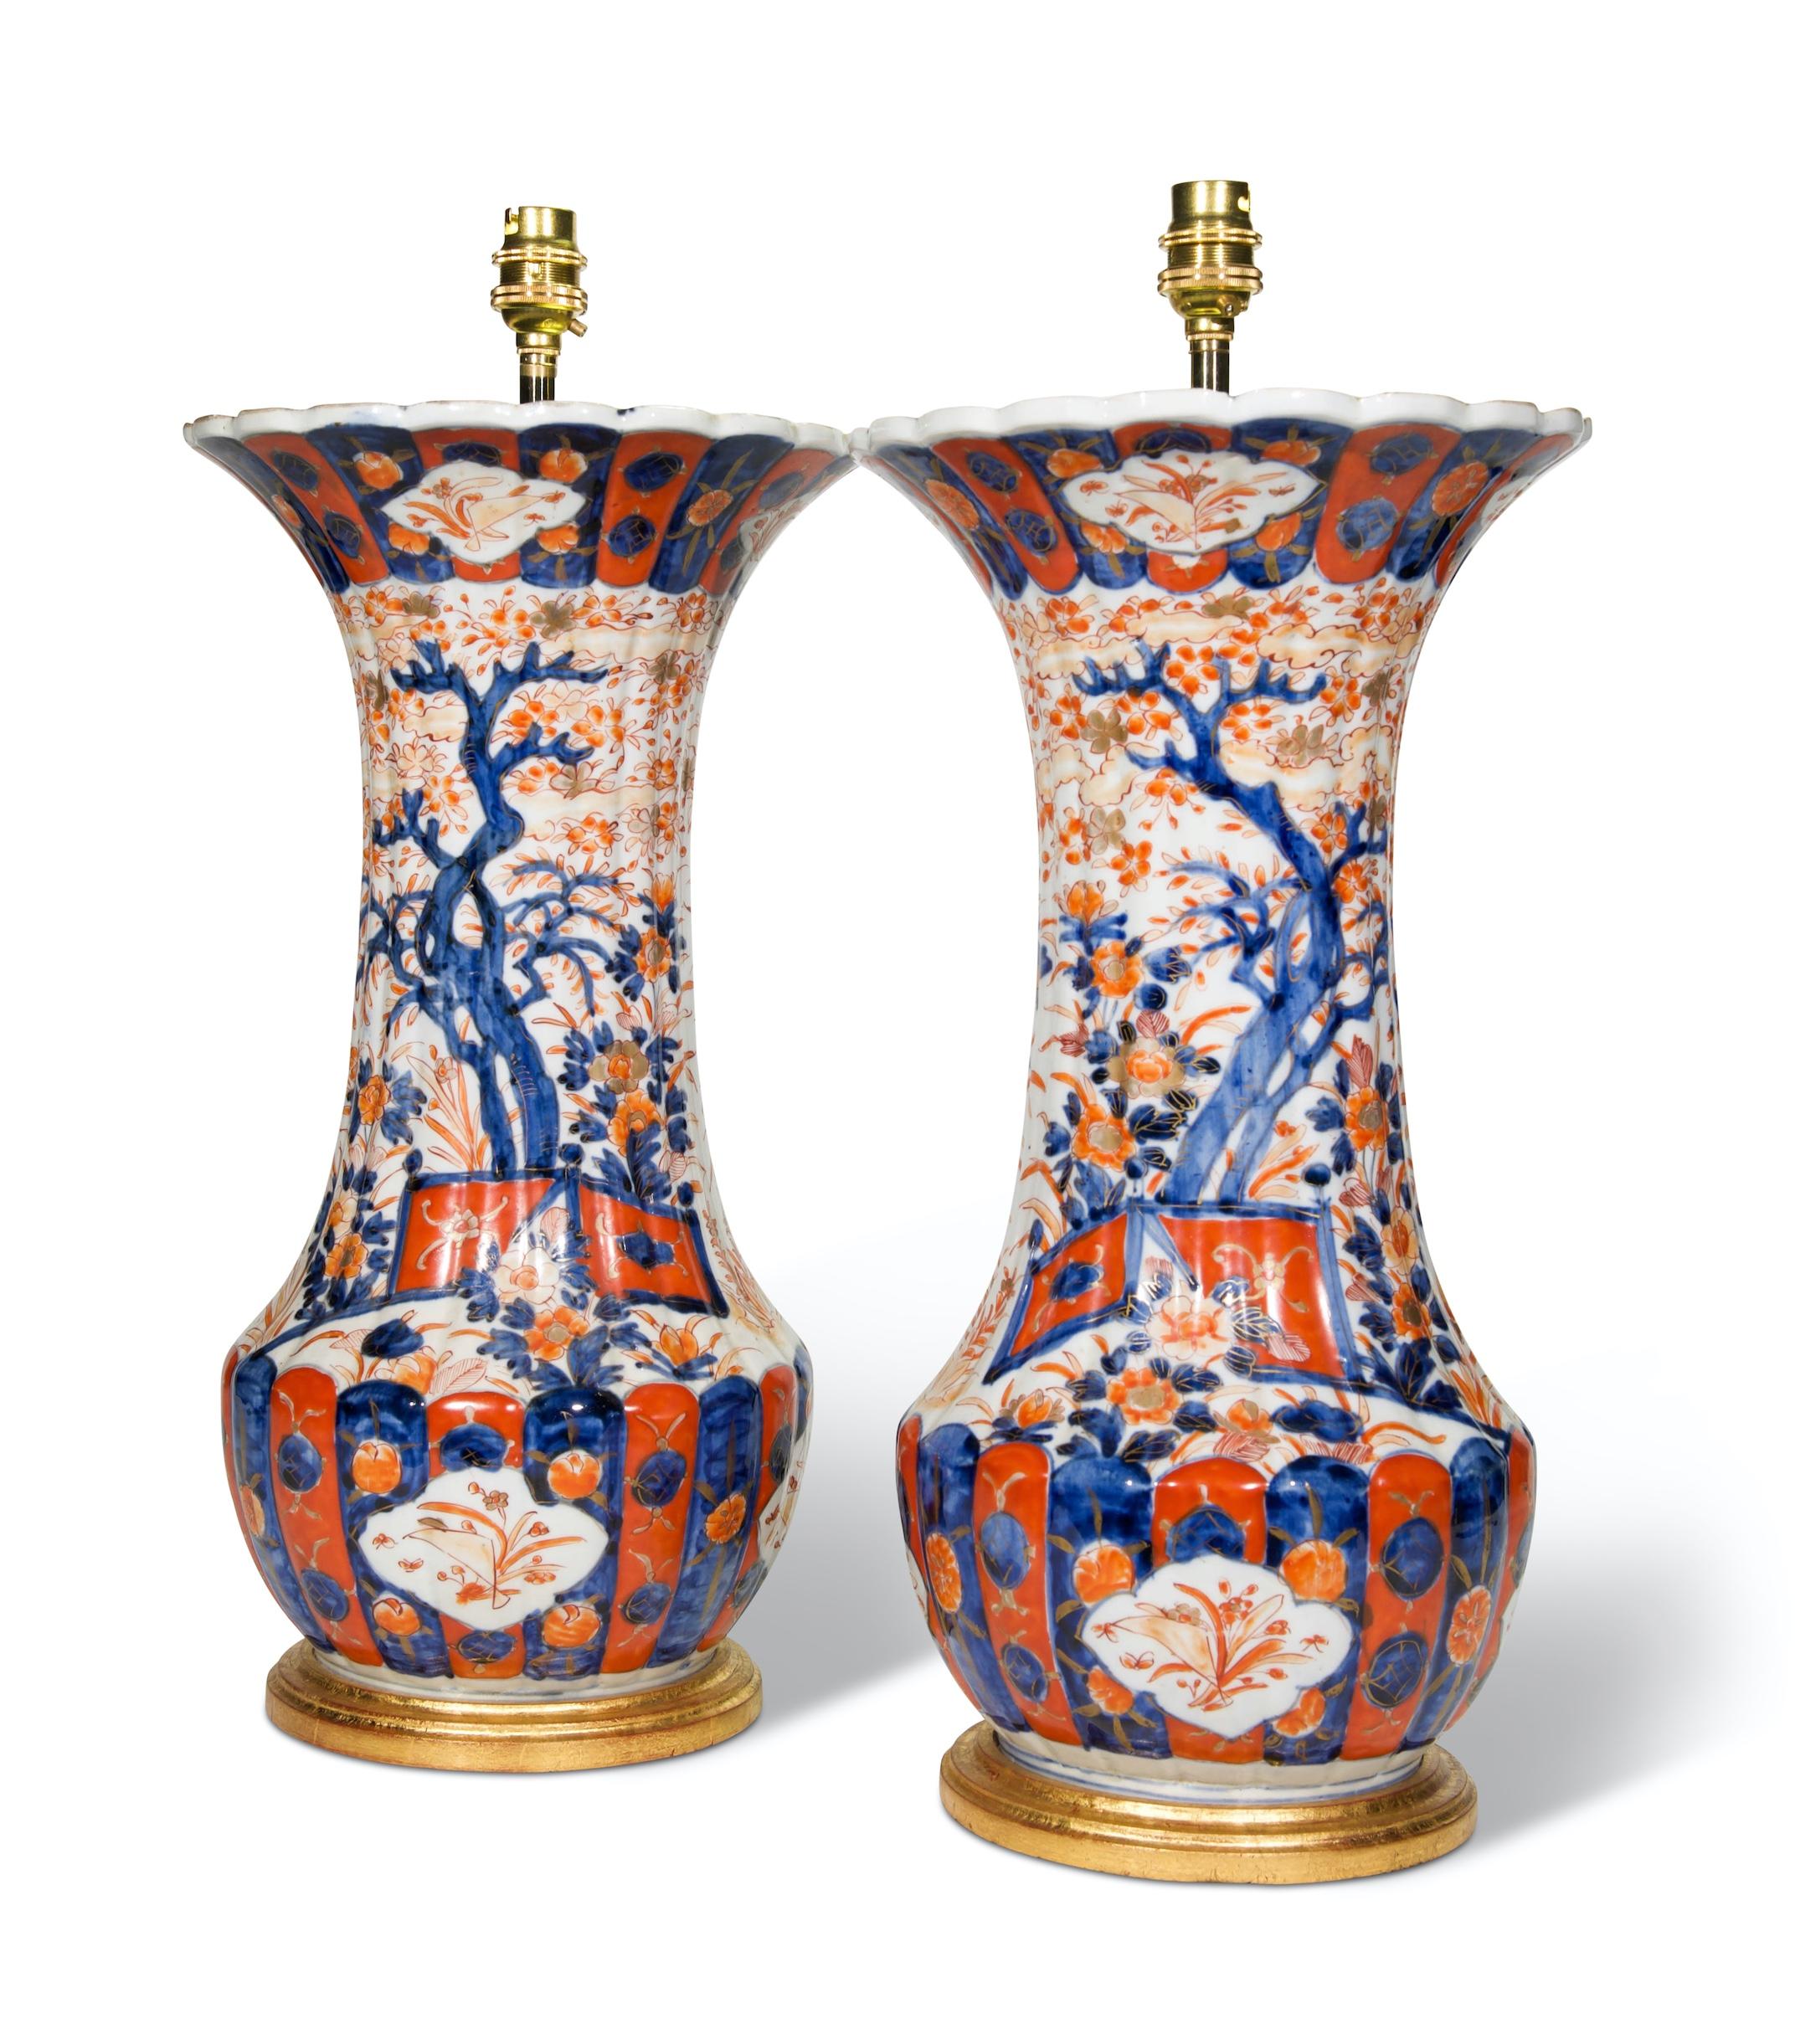 Paire de vases chinois Imari de forme balustre datant de la fin du XIXe siècle, décorés de scènes de jardin florales et feuillues dans la palette typique d'Imari de rouges et bleus ferreux avec des reflets dorés sur fond blanc, avec des corps